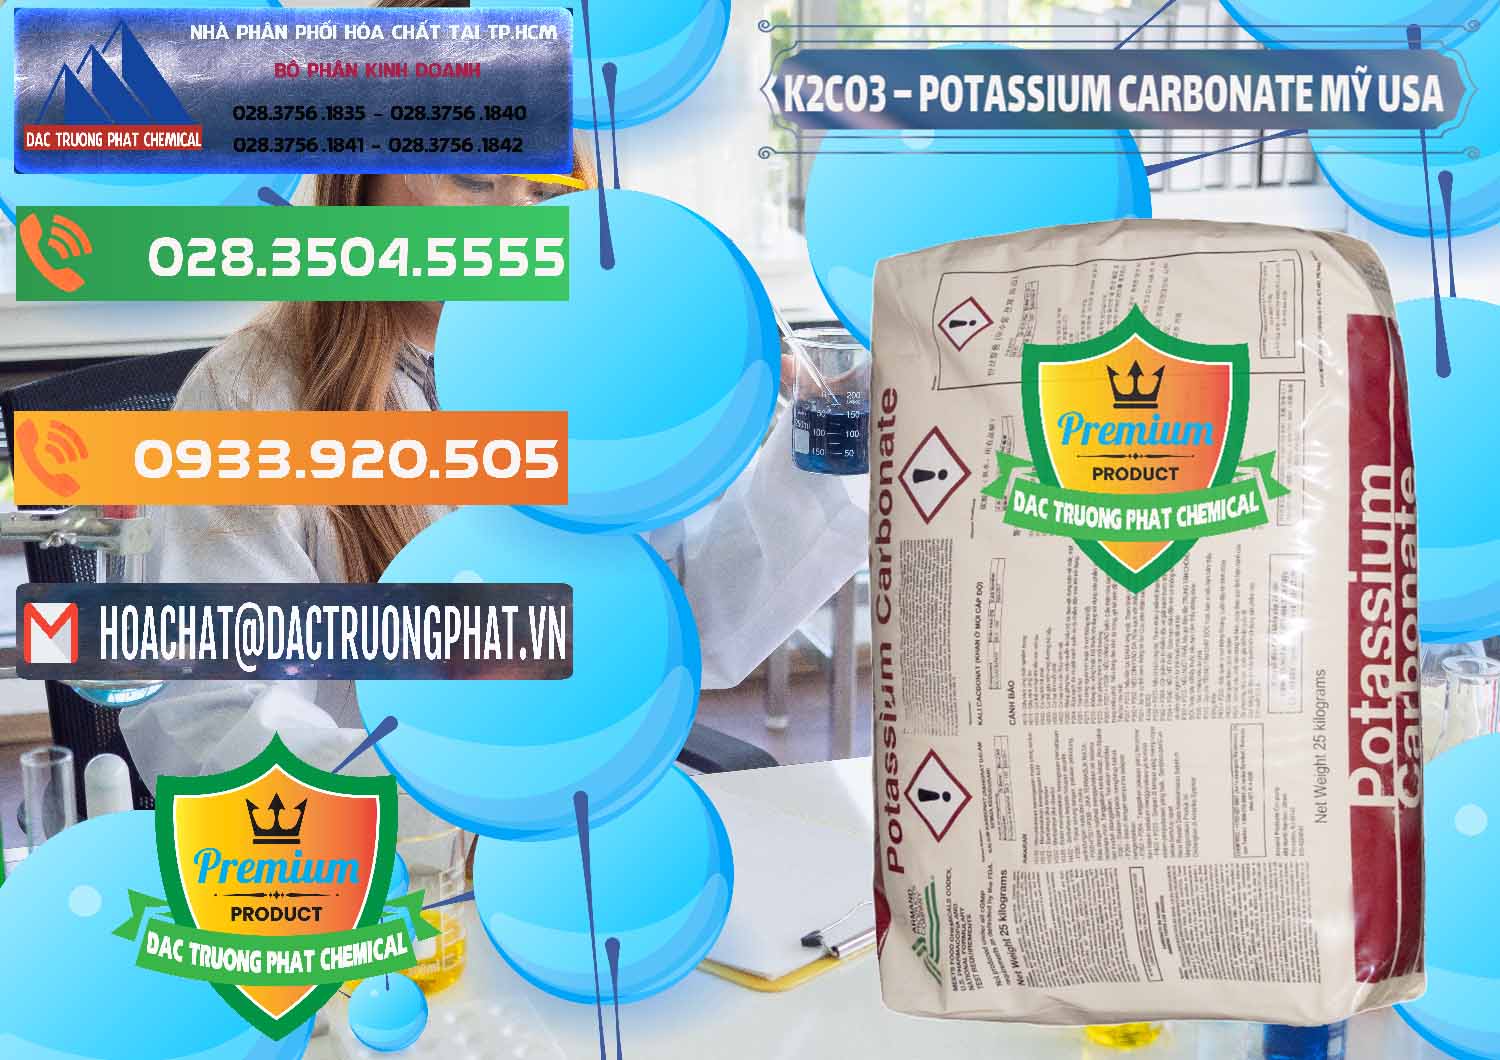 Nơi chuyên kinh doanh & bán K2Co3 – Potassium Carbonate Mỹ USA - 0082 - Cty phân phối và kinh doanh hóa chất tại TP.HCM - hoachatxulynuoc.com.vn